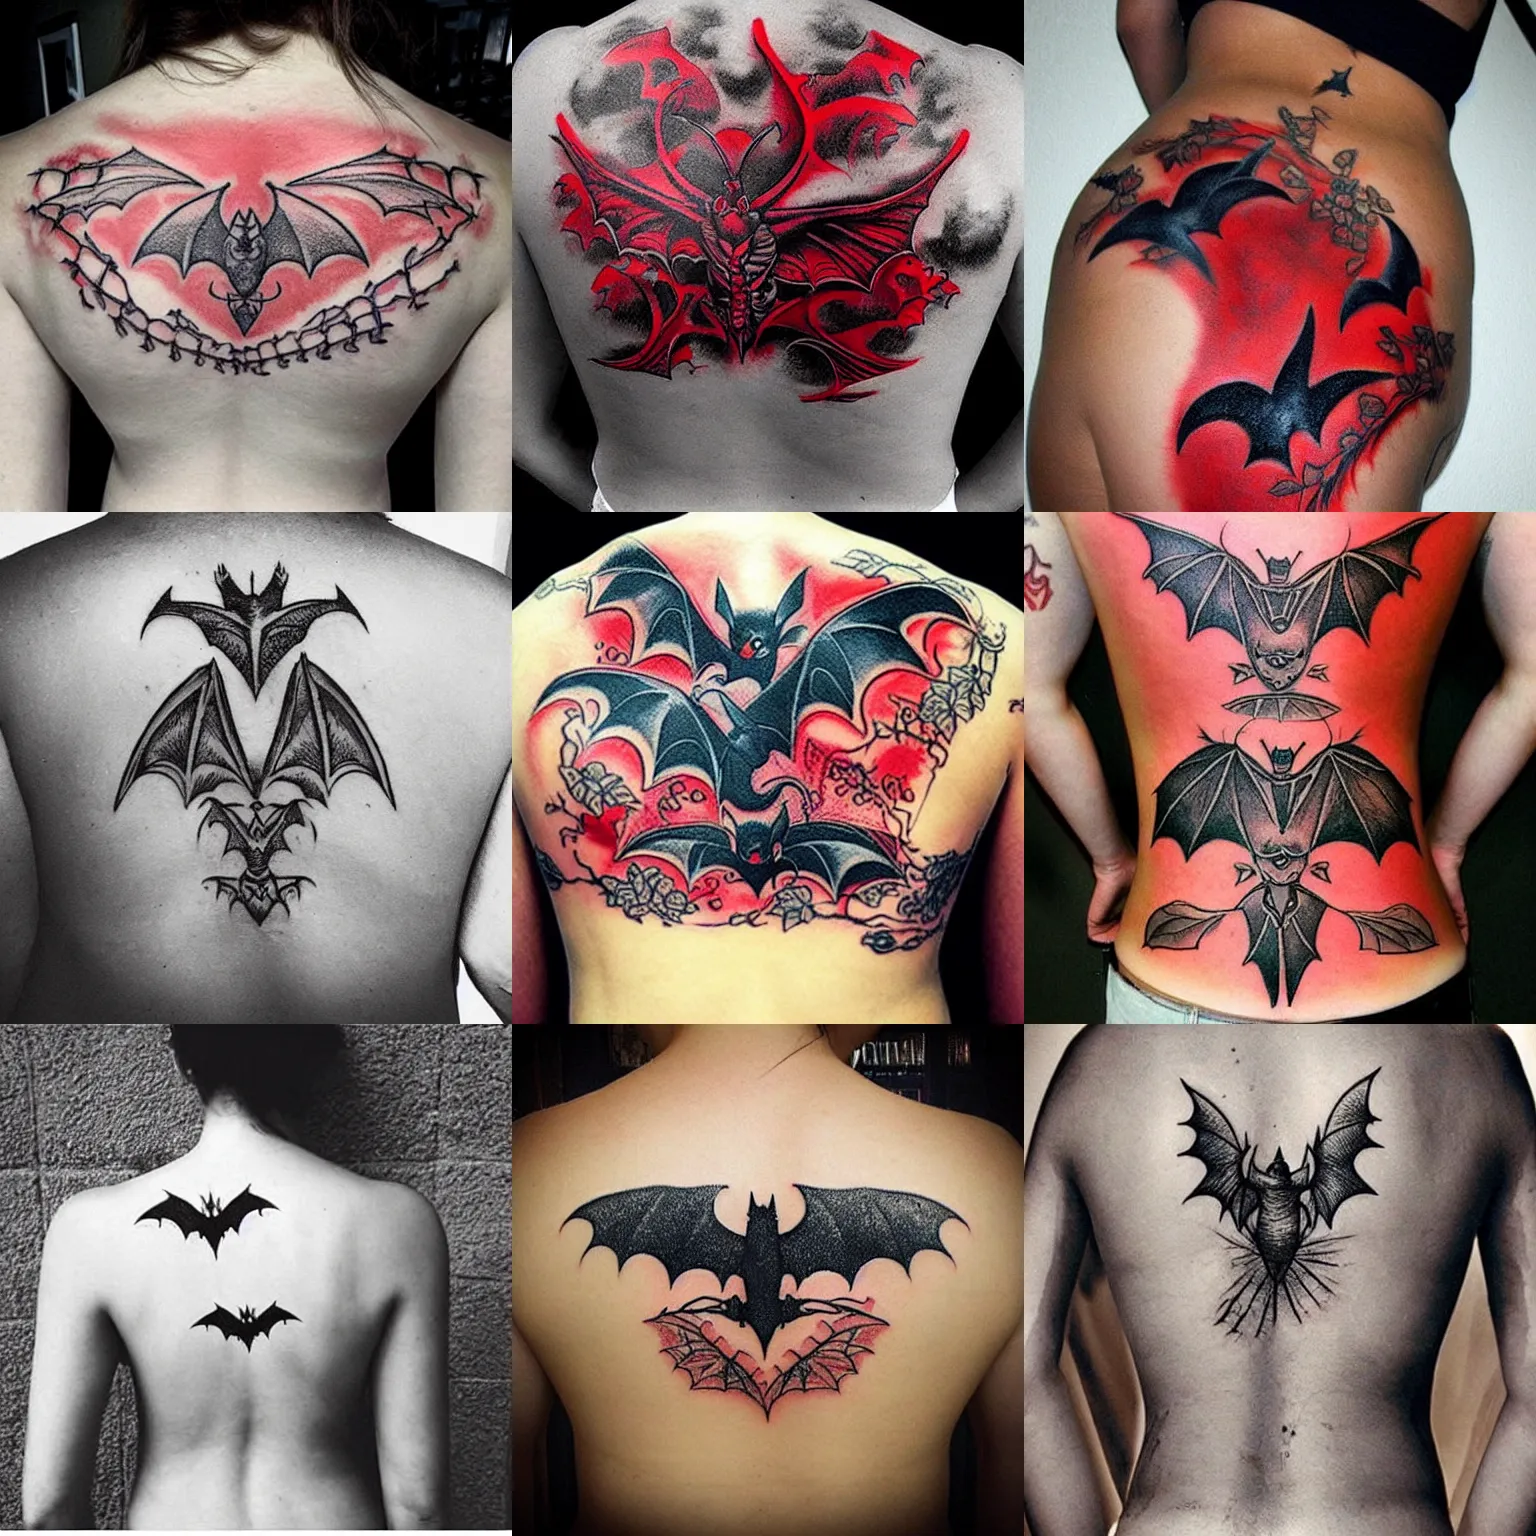 Free-tailed Bat Temporary Tattoo